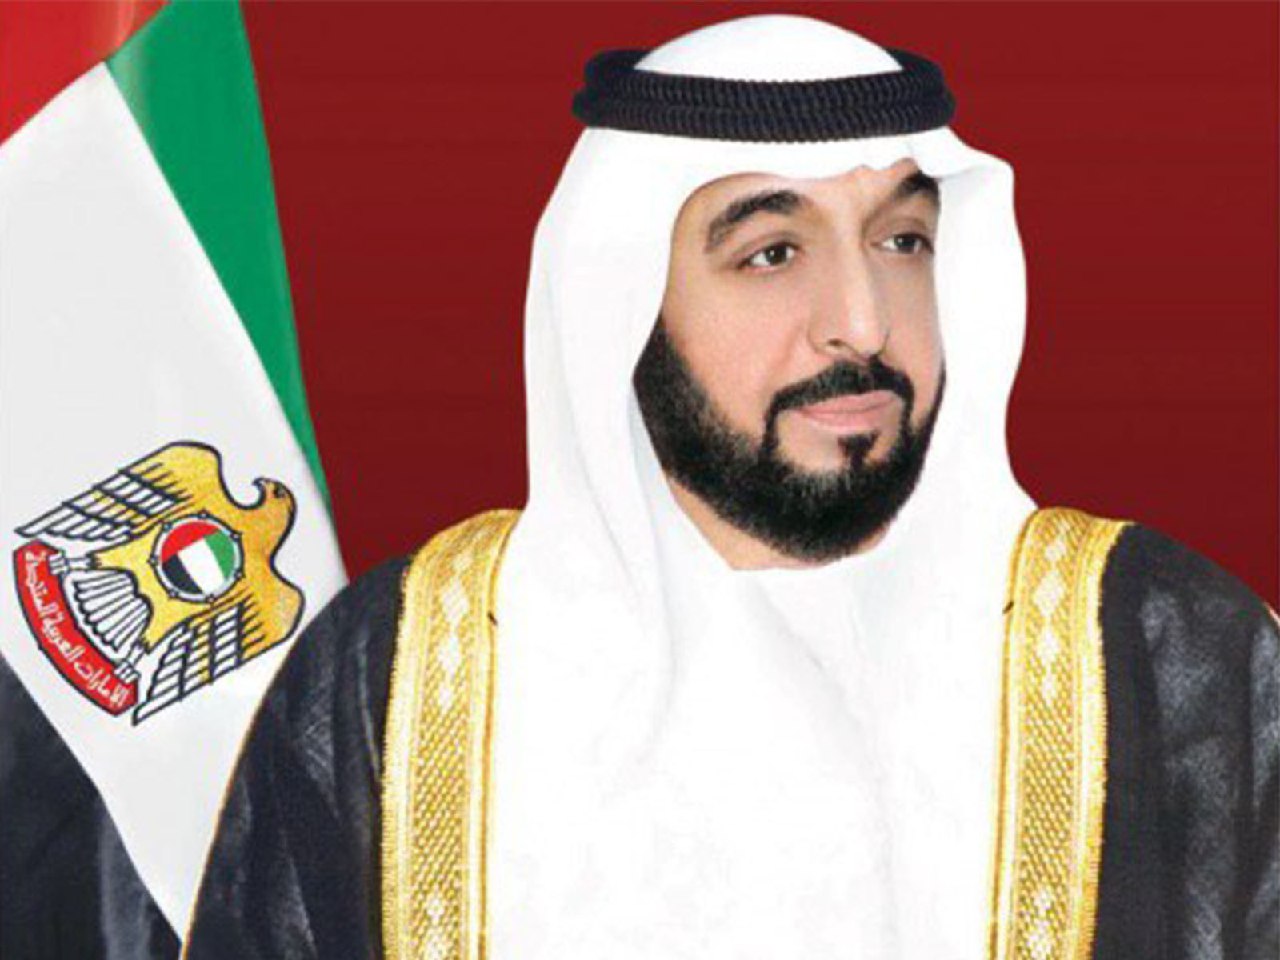 رئيس الدولة ينعي أمير الكويت و يأمر بإعلان الحداد 3 أيام و تنكيس الأعلام